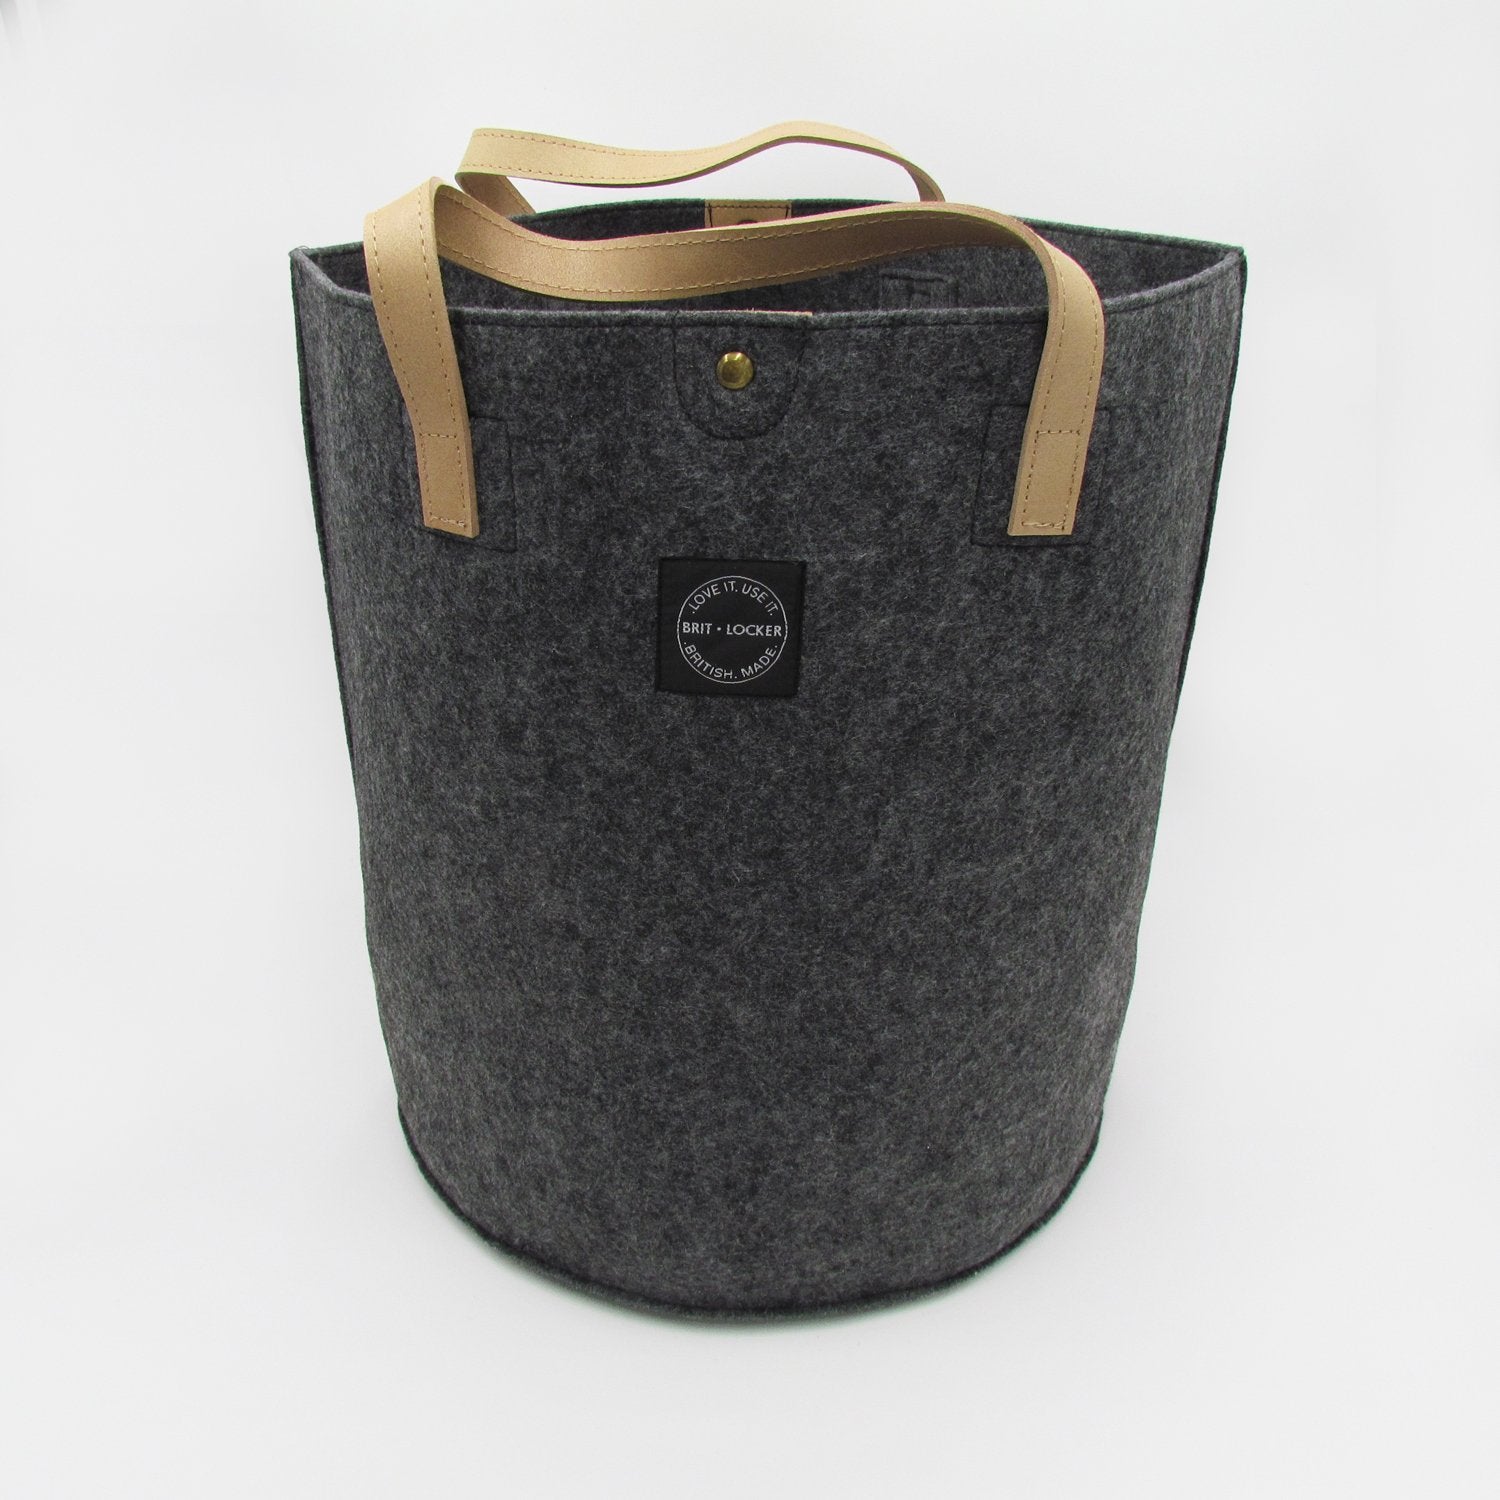 Felt Storage Basket with Leather Handles - Dark Grey - Made in Britain - BRIT LOCKER